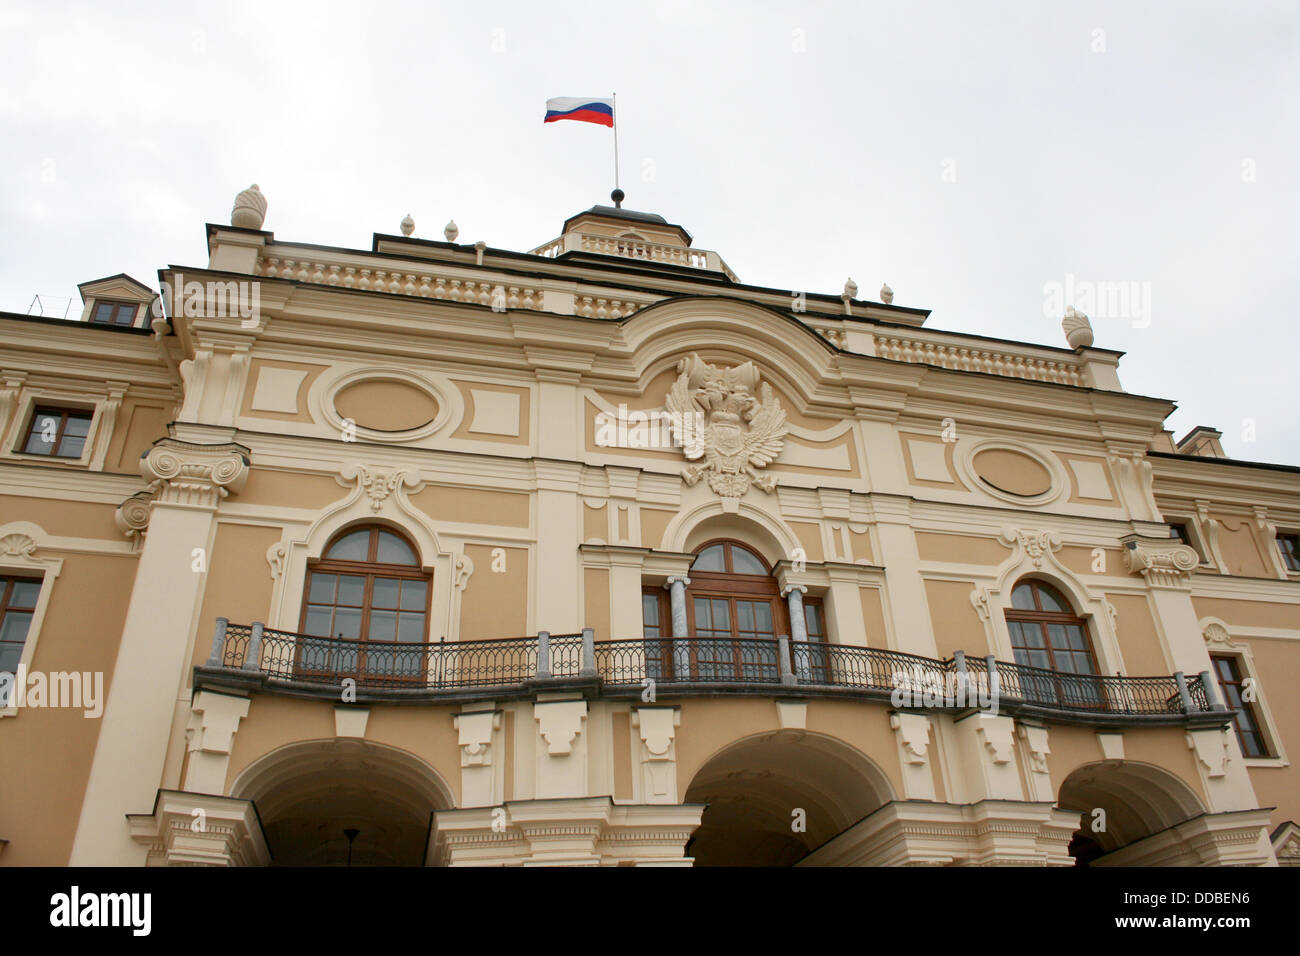 Ein Blick auf die Konstantin-Palast in Strelna bei St. Petersburg, Russland, 22. August 2013. Konstantin-Palast wird der Austragungsort für den g-20-Gipfel am 05. und 6. September 2013 sein. Foto: ULF MAUDER Stockfoto